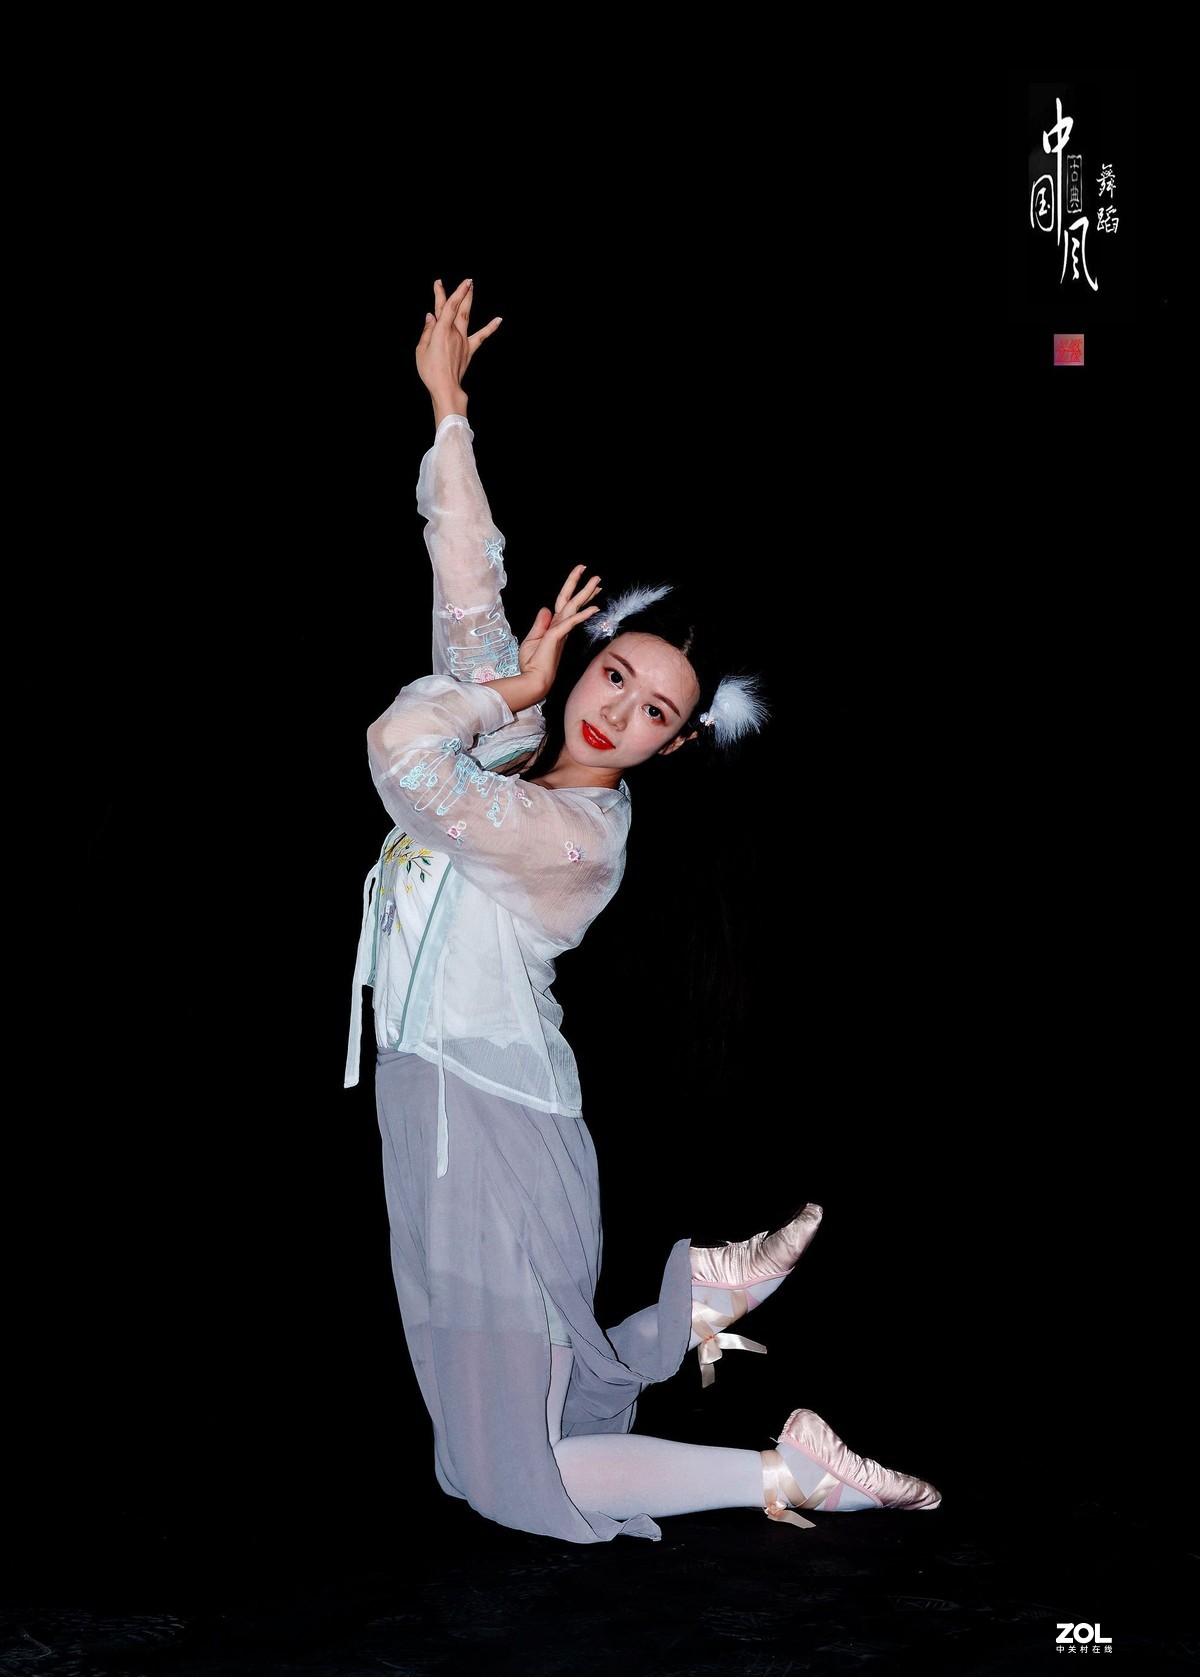 棚拍中国风舞蹈